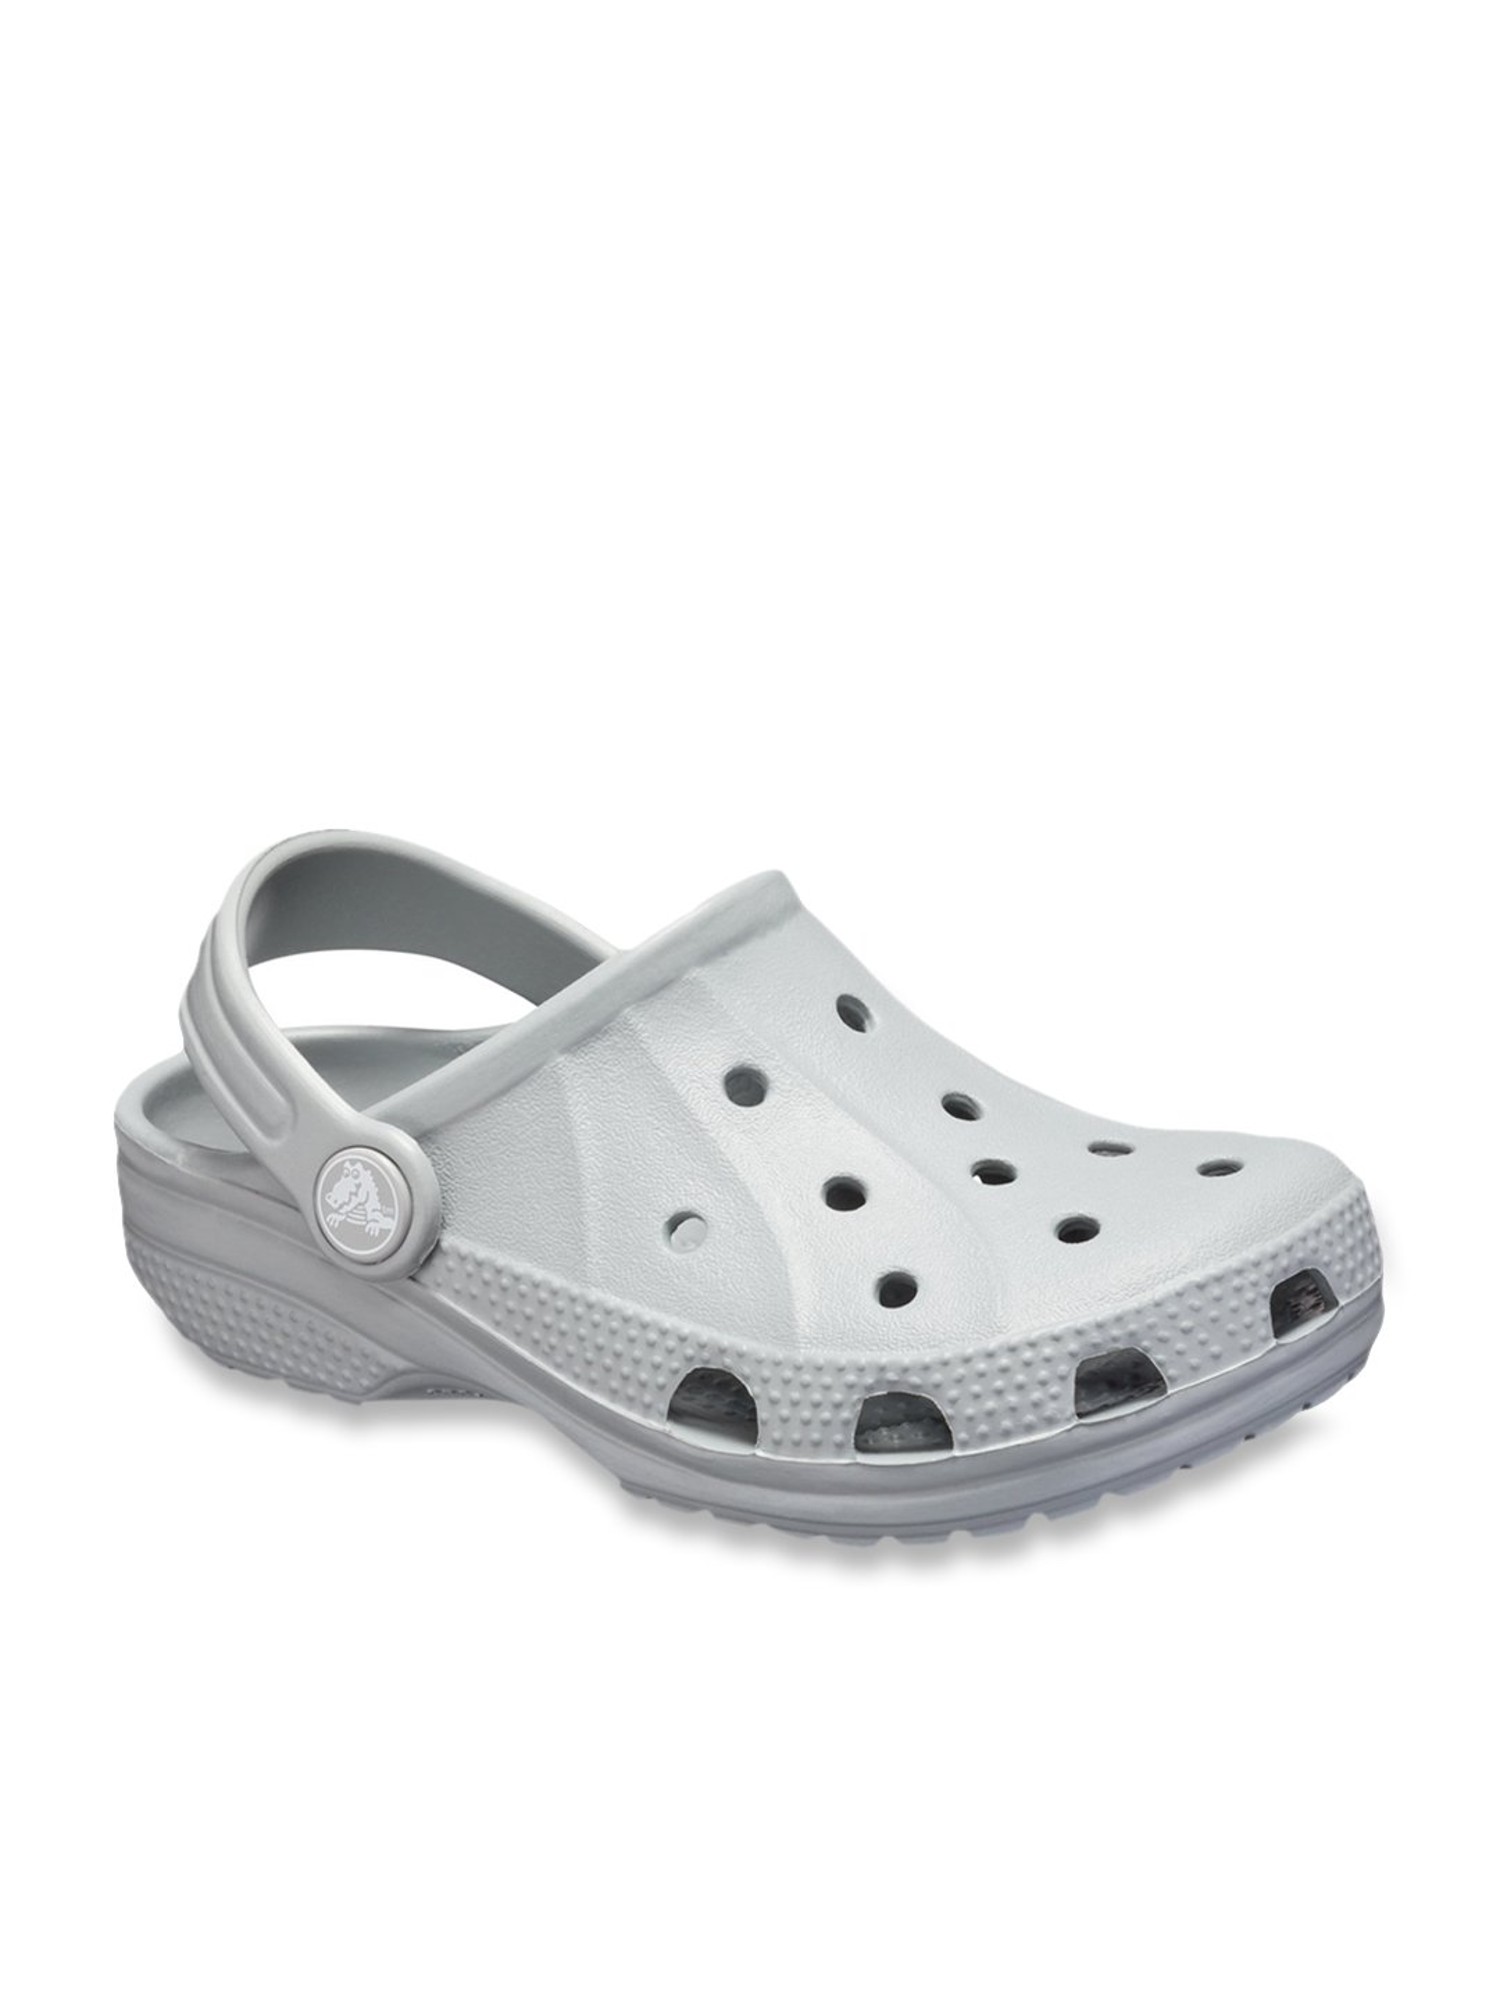 light grey crocs